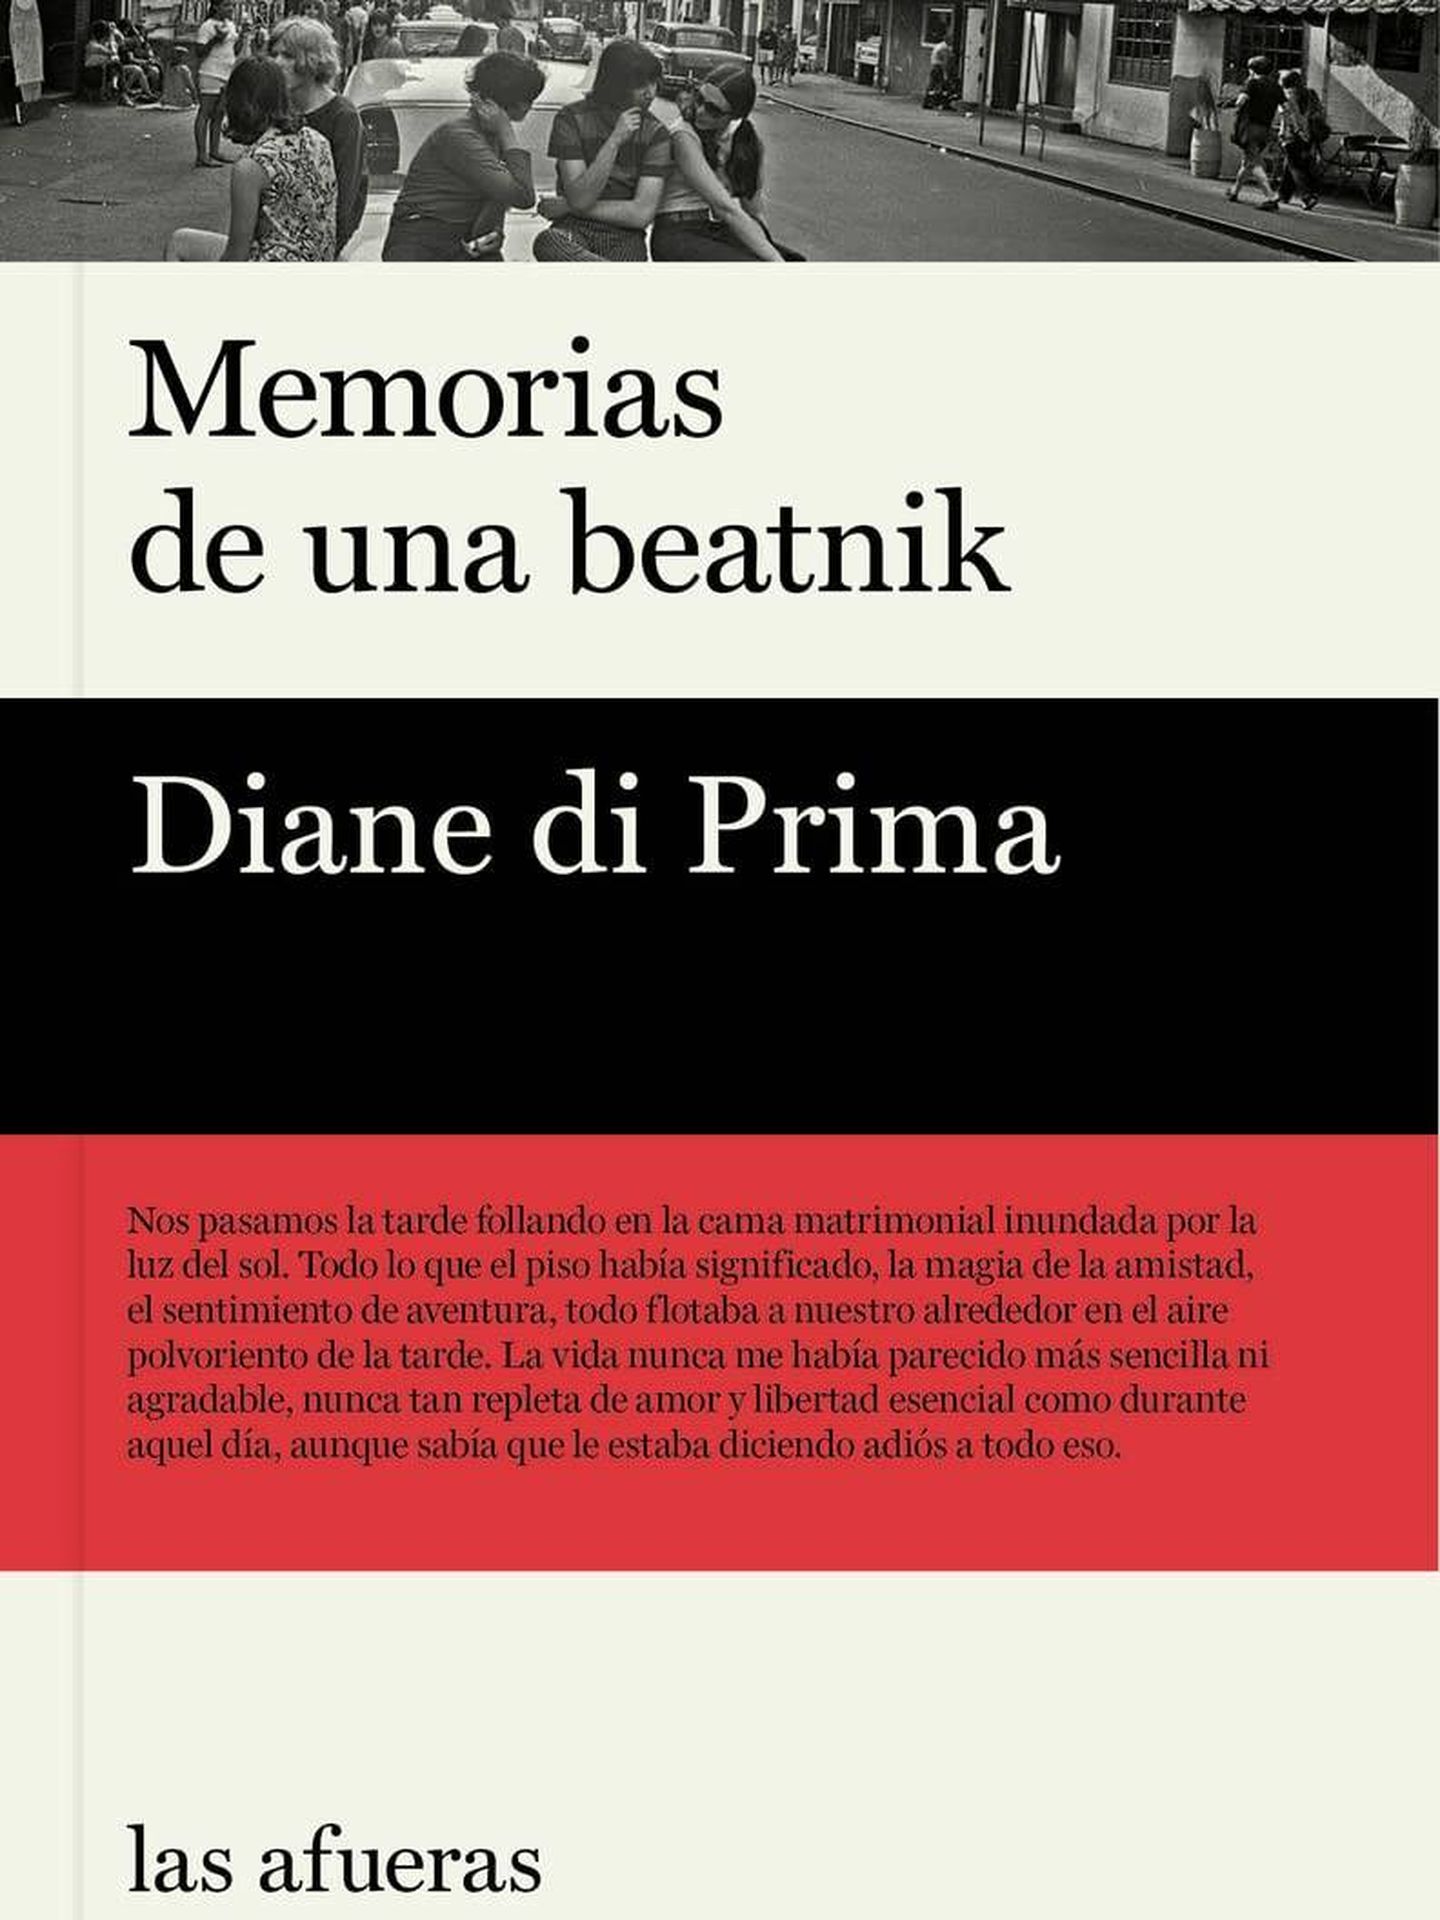 'Memorias de una beatnik'